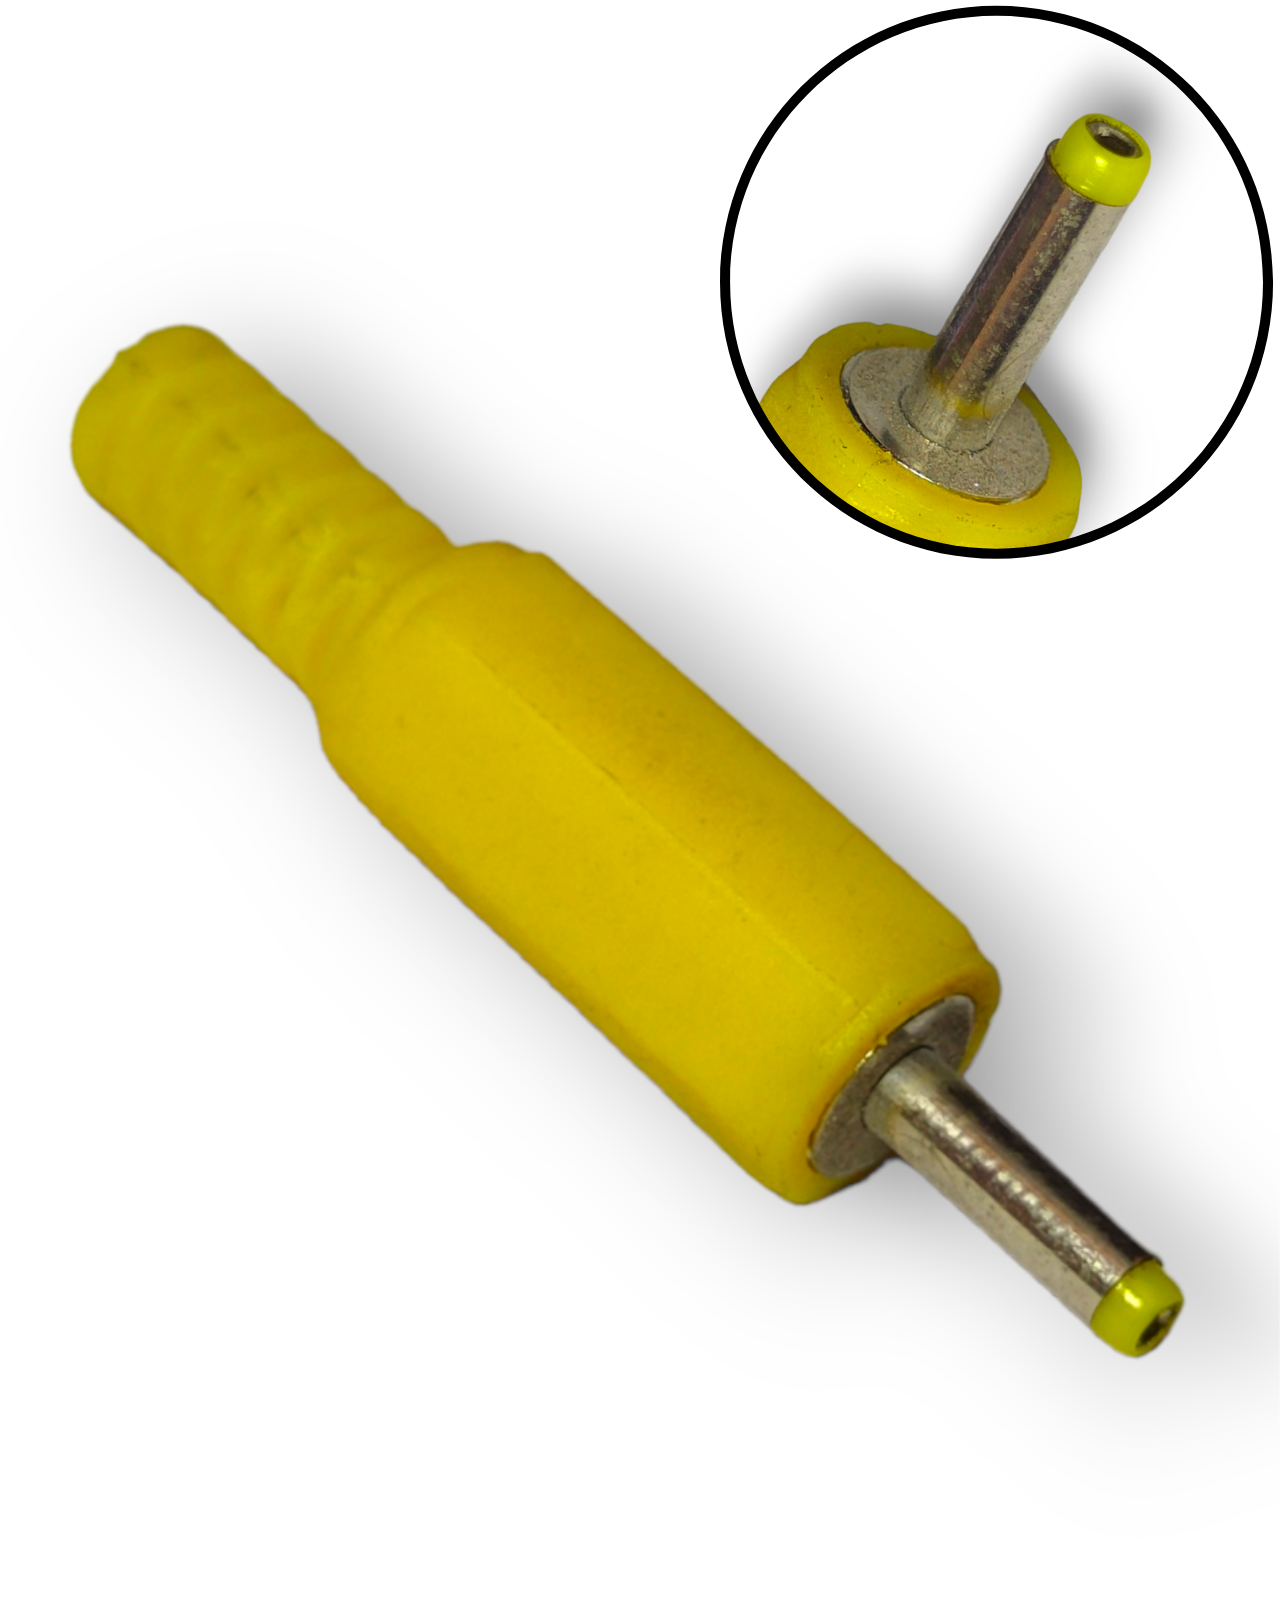 INV17 Plug Invertido Amarillo 1.1 mm